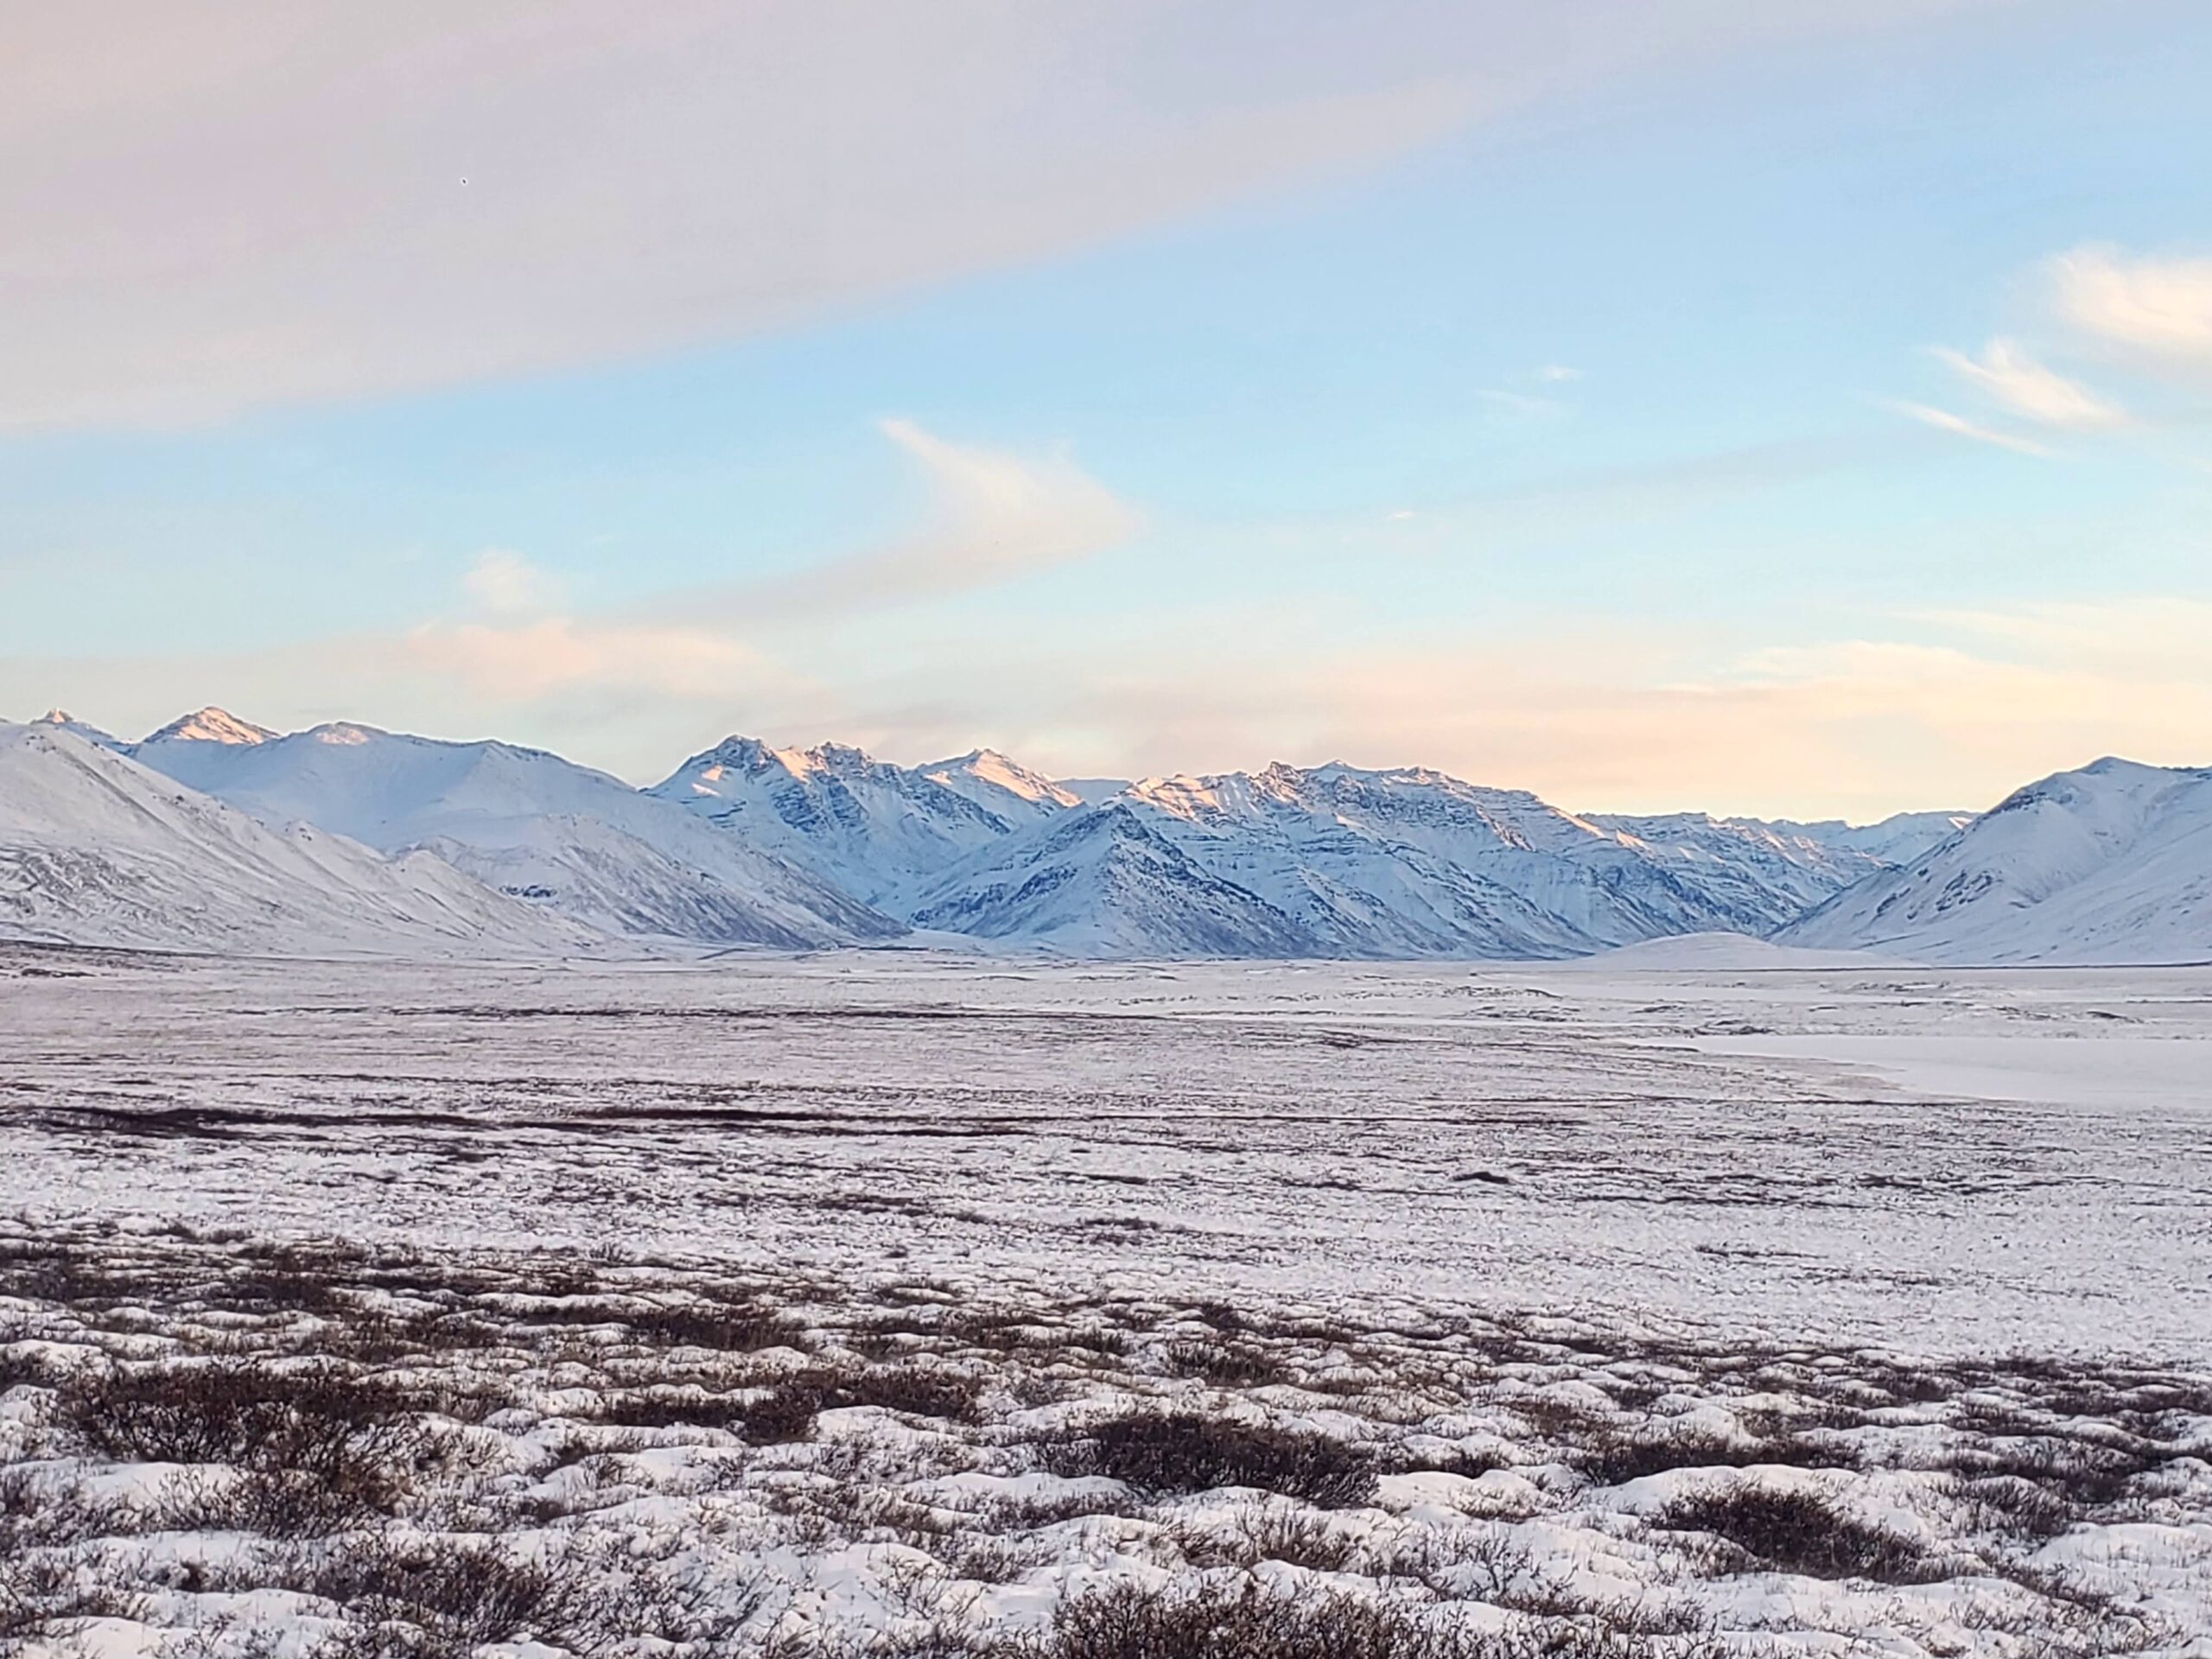 Brooks Range on the North Slope of Alaska